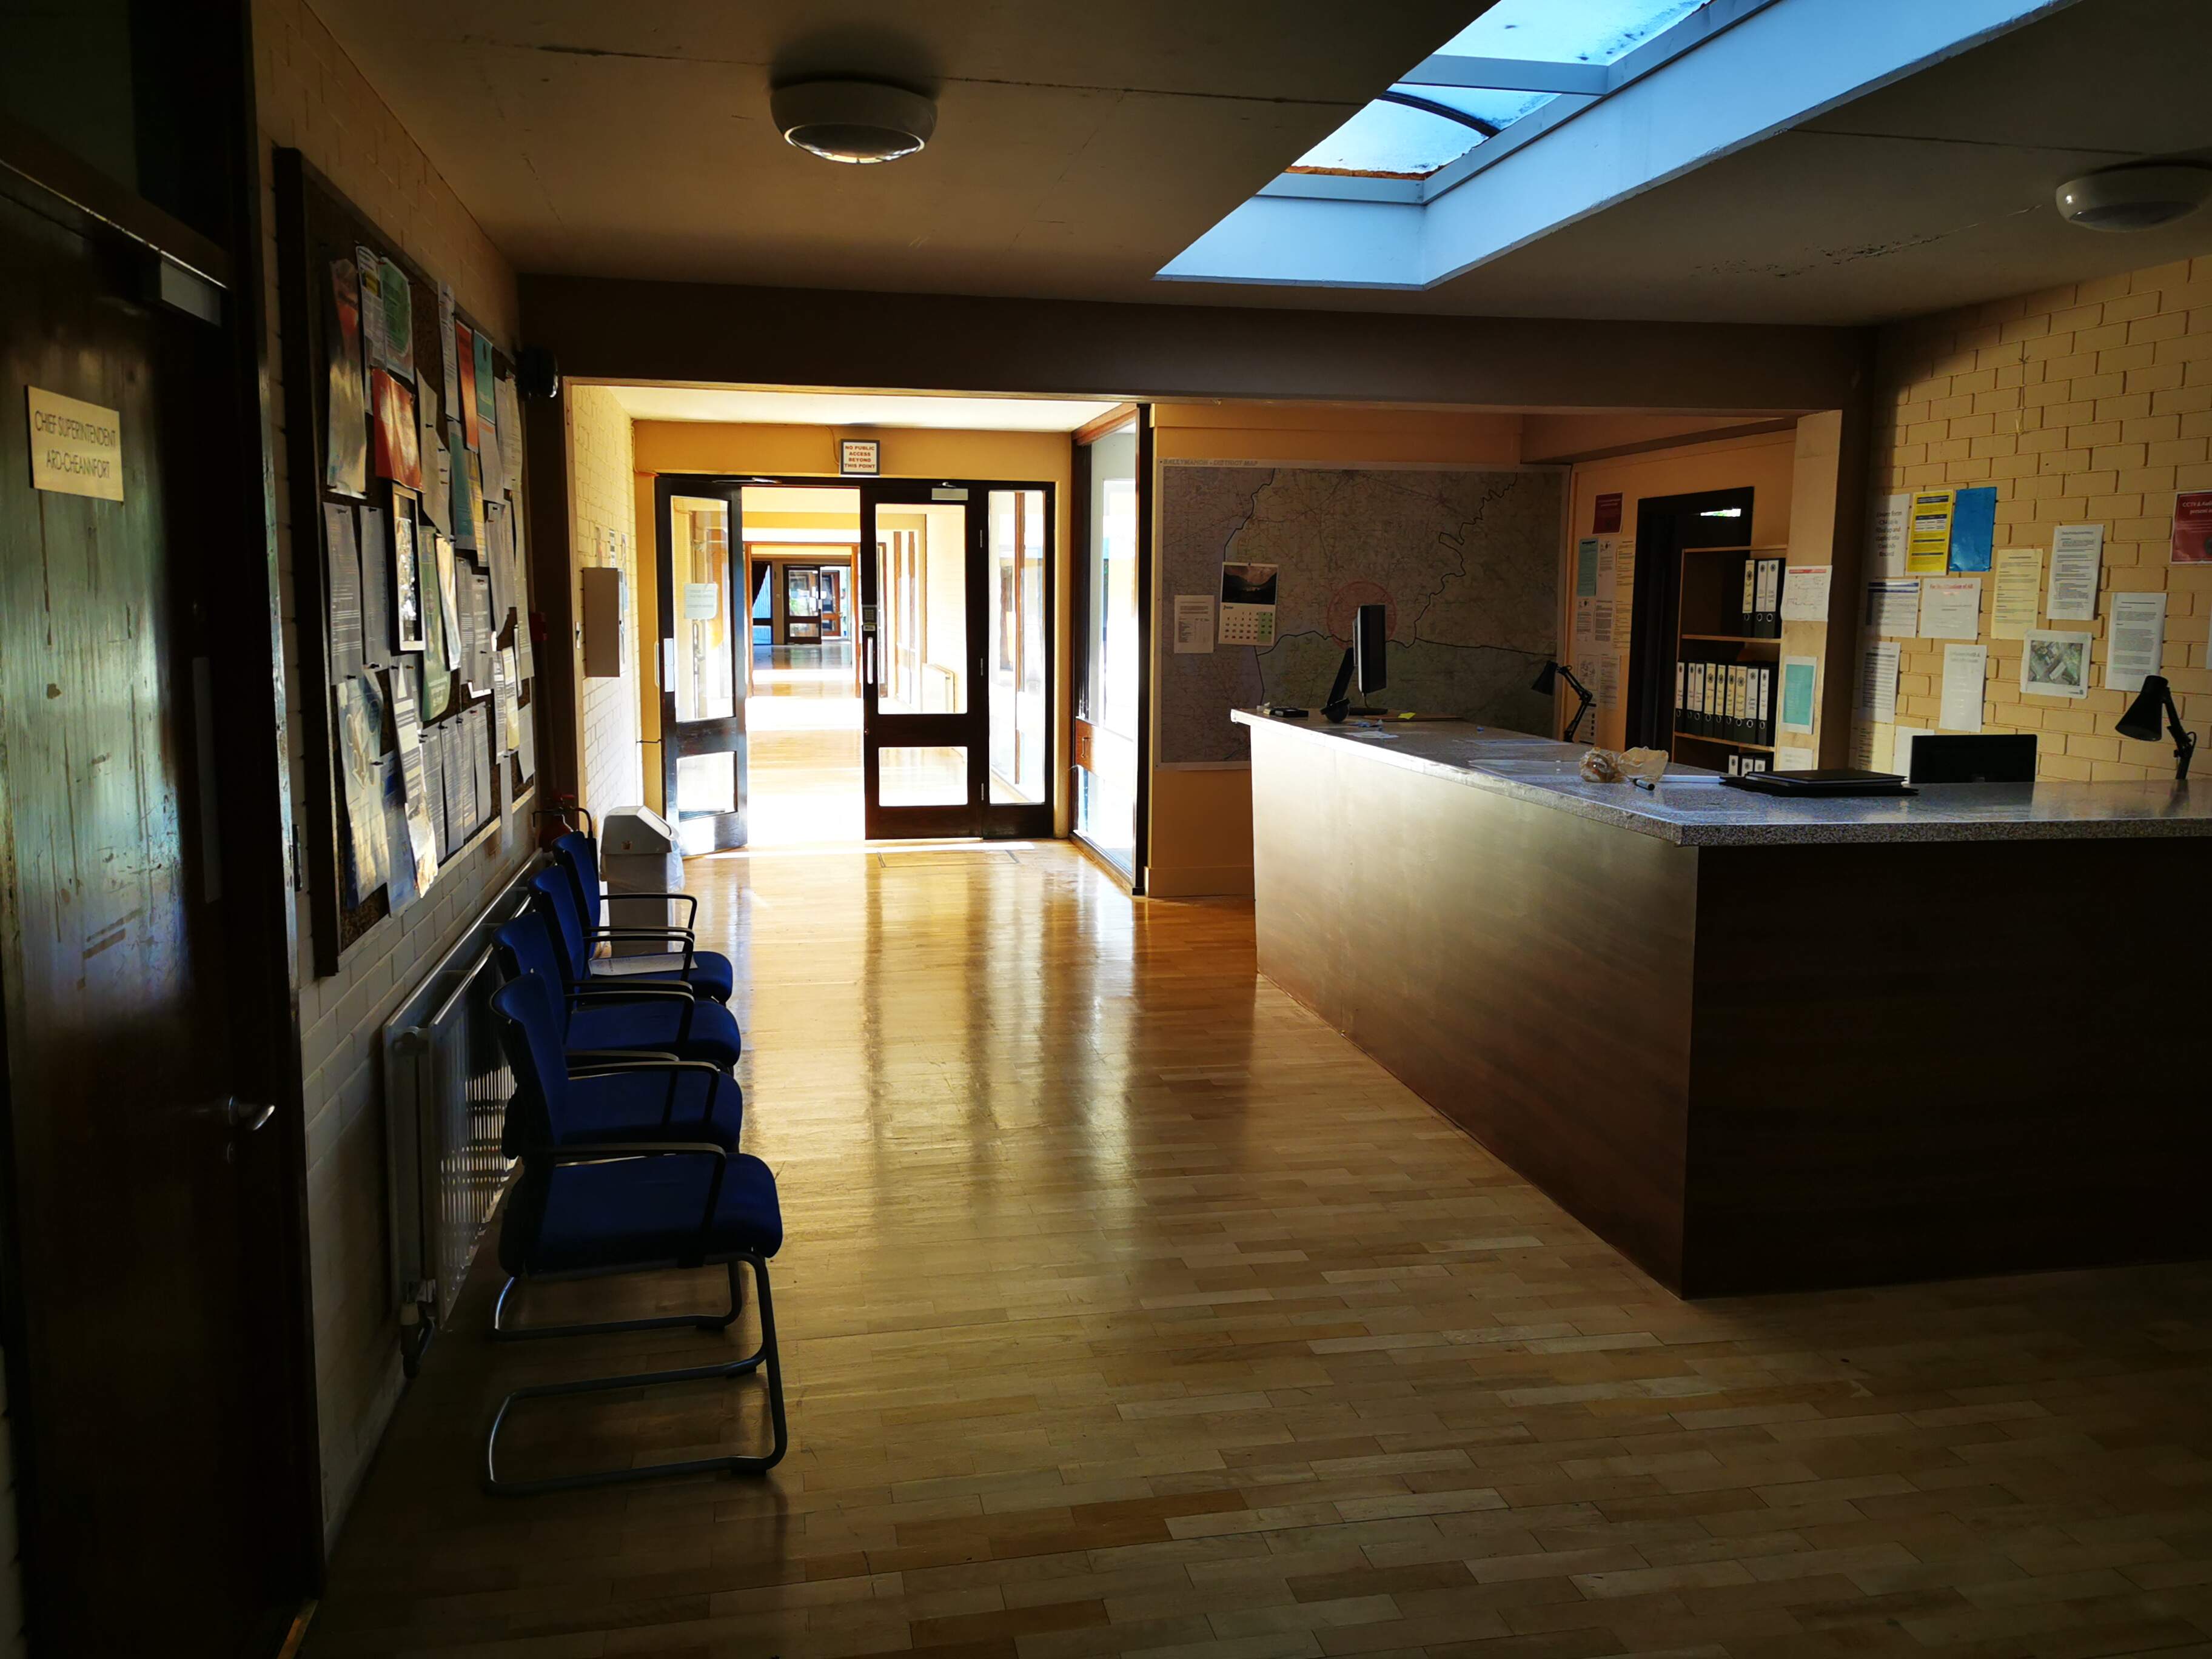 Corridor transformed into Garda/Police station reception area